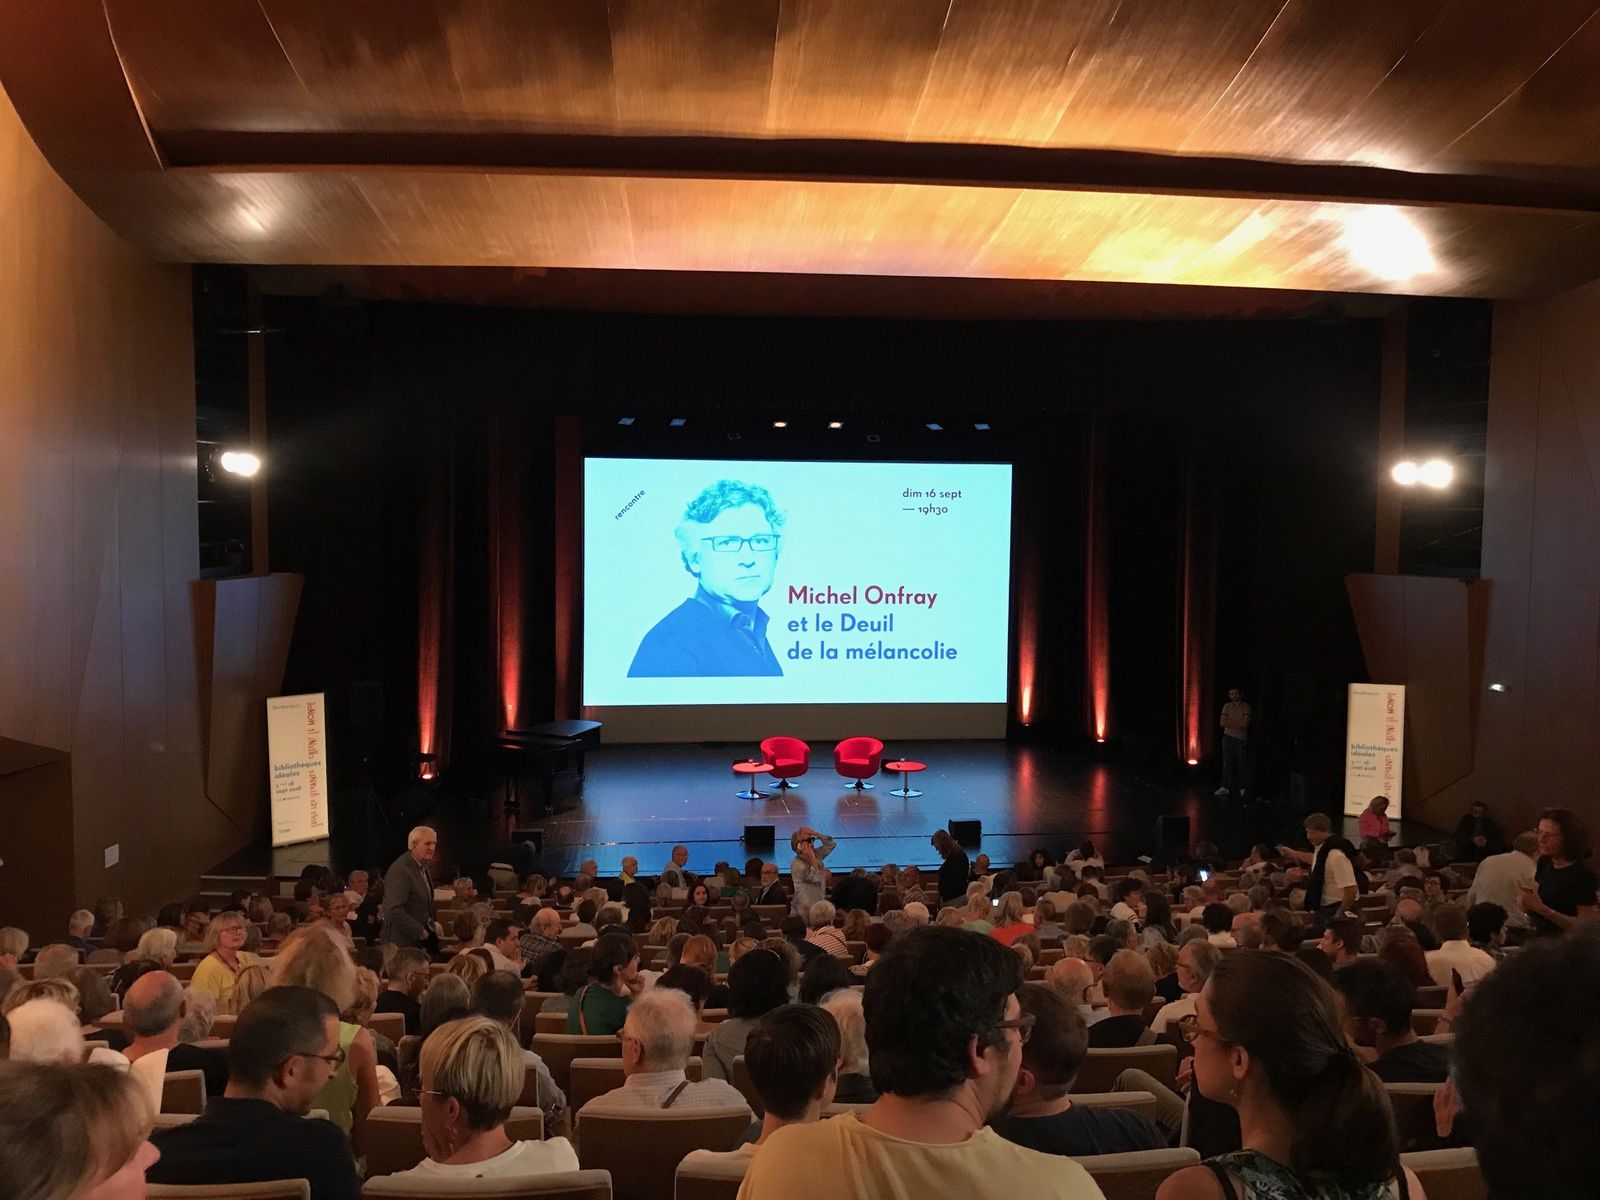 Michel Onfray - Bibliothèques idéales (Strasbourg) - 16.09.2018 - "Le Deuil  de la mélancolie" - Michel Onfray